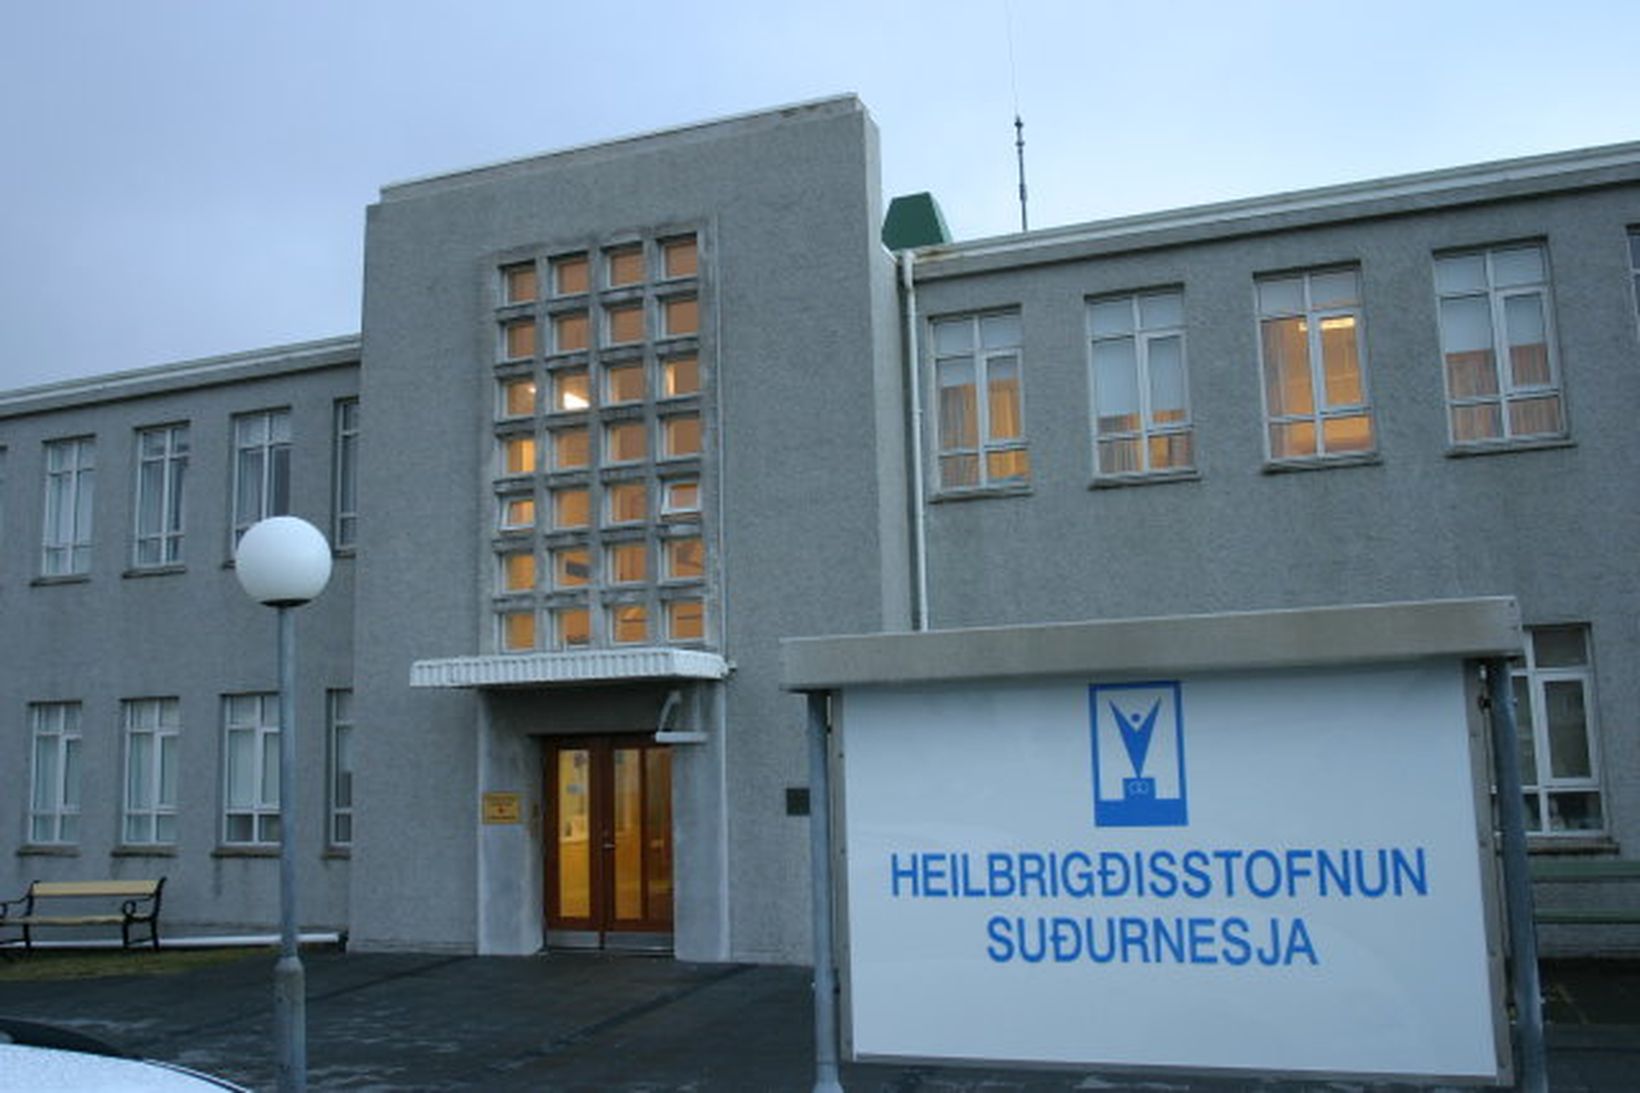 Heilbrigðisstofnun Suðurnesja.